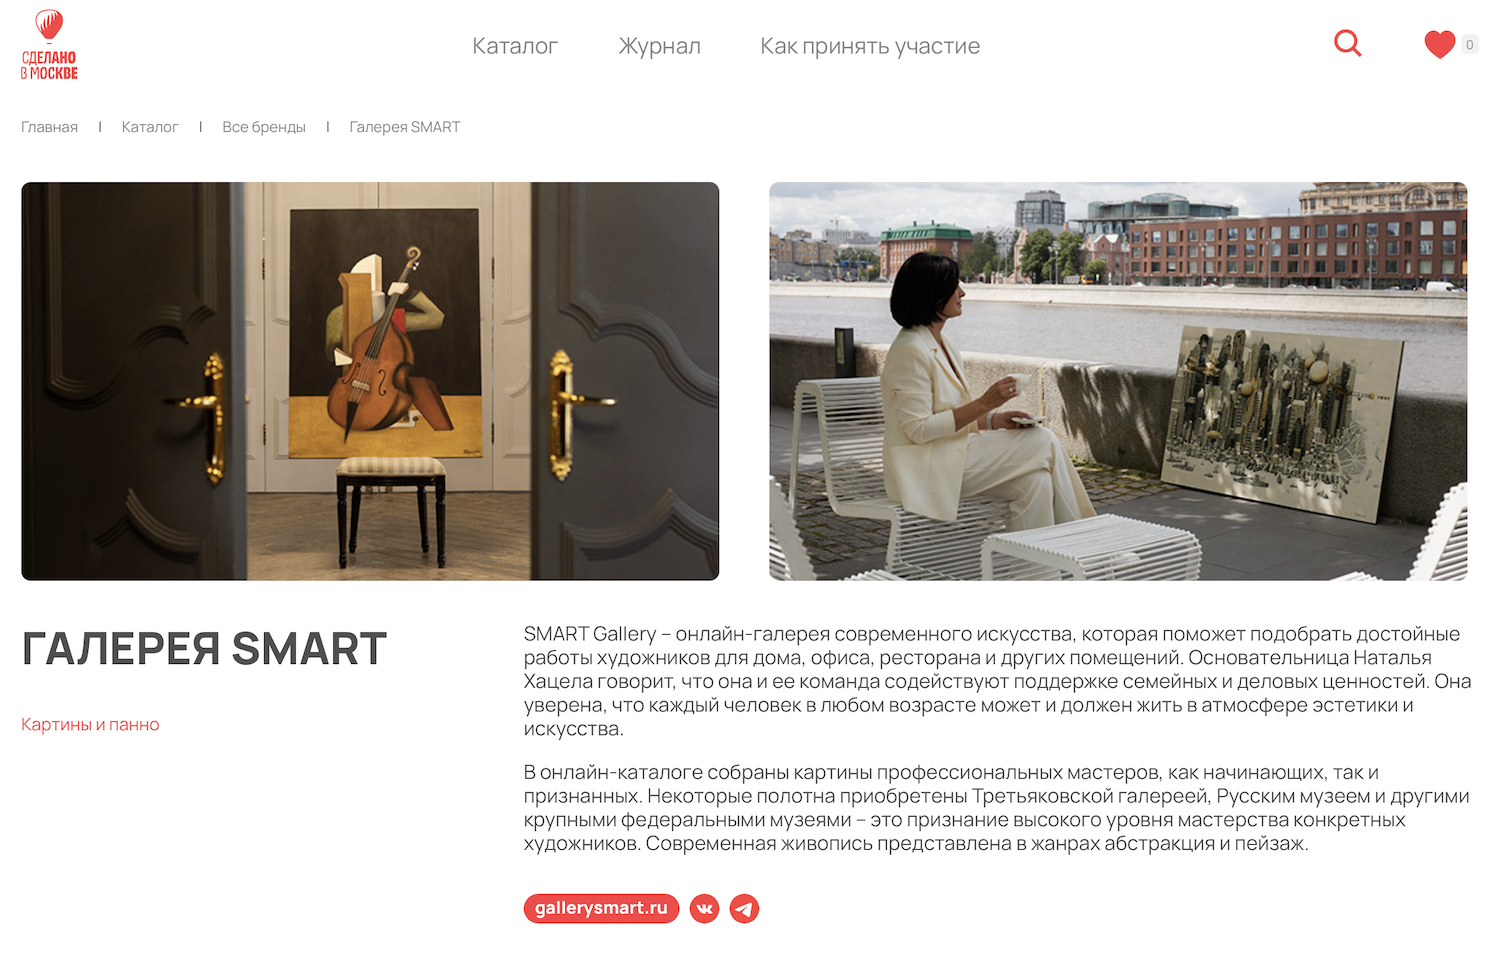 Галерея современного искусства SMART - участник проекта Сделано в Москве